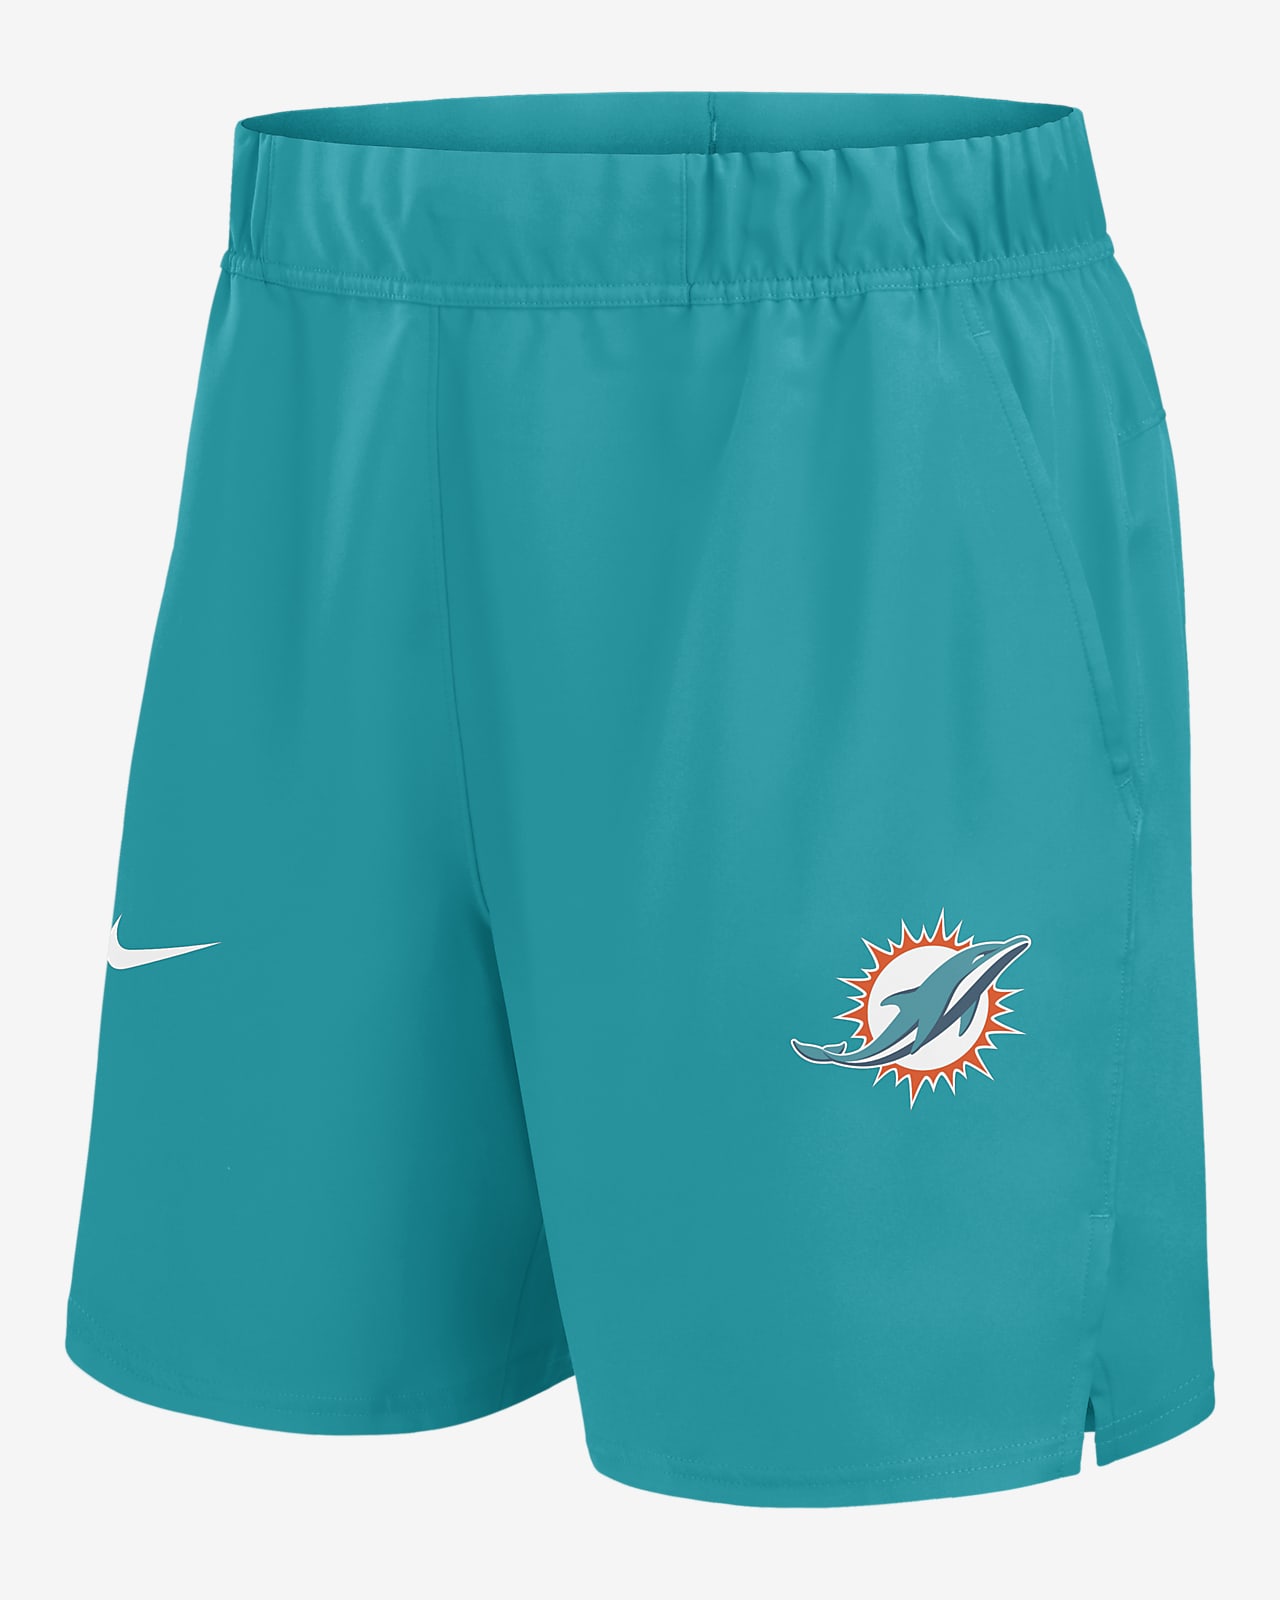 Shorts Nike Dri-FIT de la NFL para hombre Miami Dolphins Blitz Victory